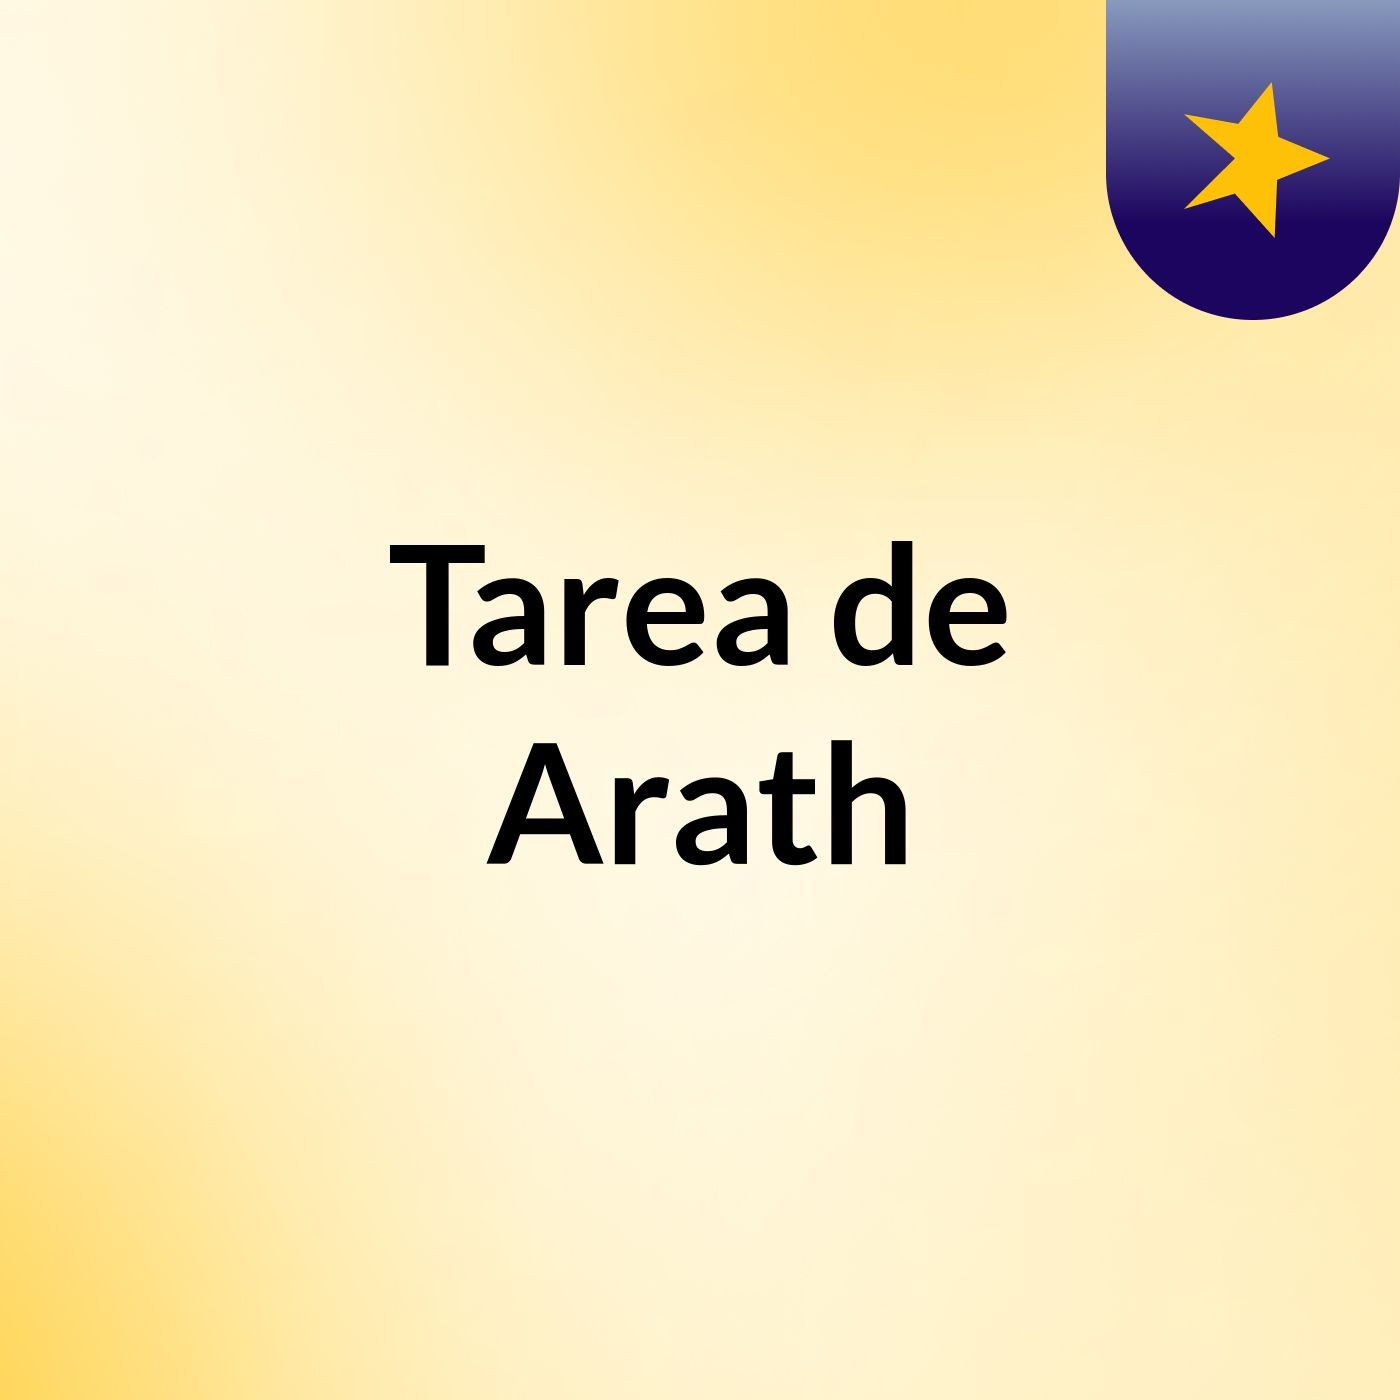 Tarea de Arath